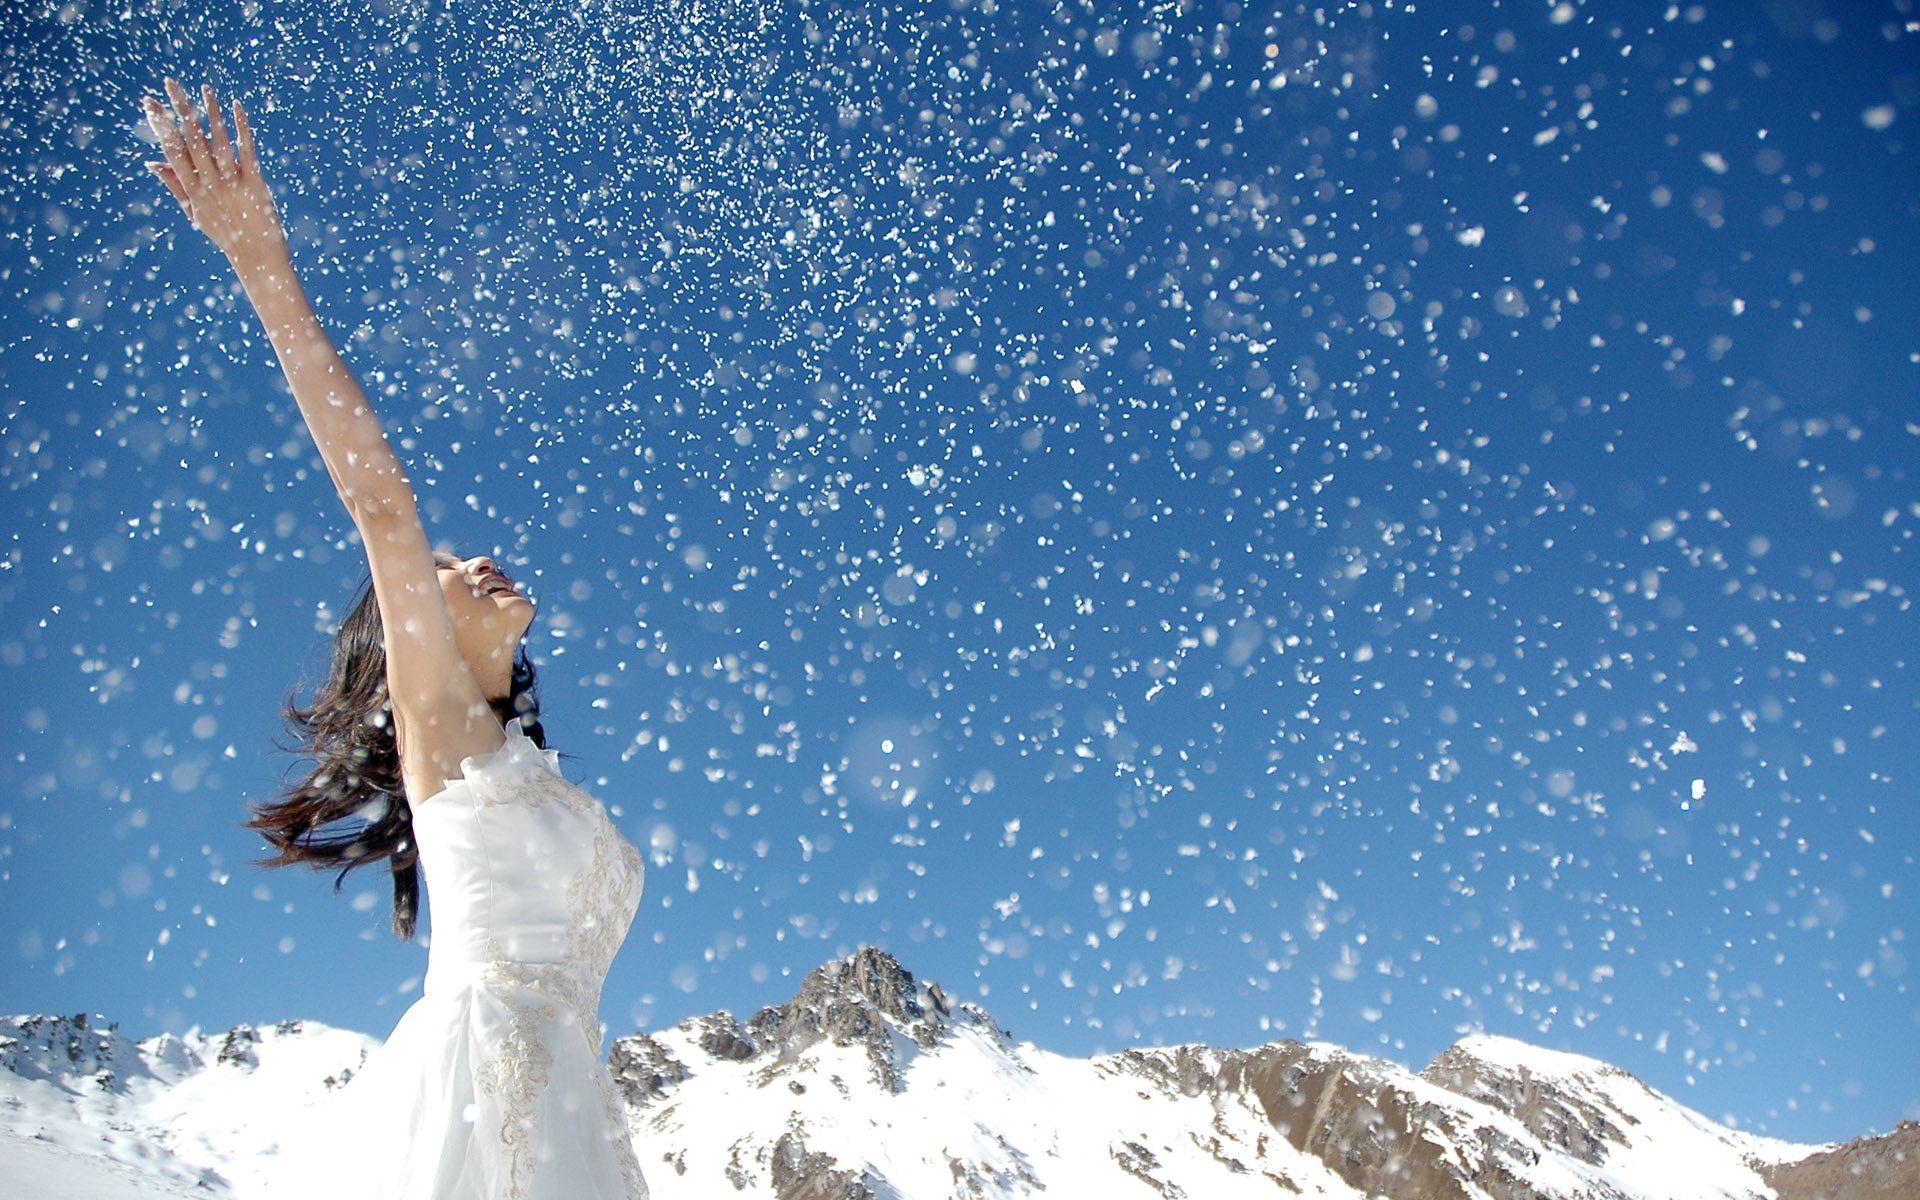 Сугробы жизни. Снег радость. Счастье снег. Девушка в снегу. Снег падает с неба.